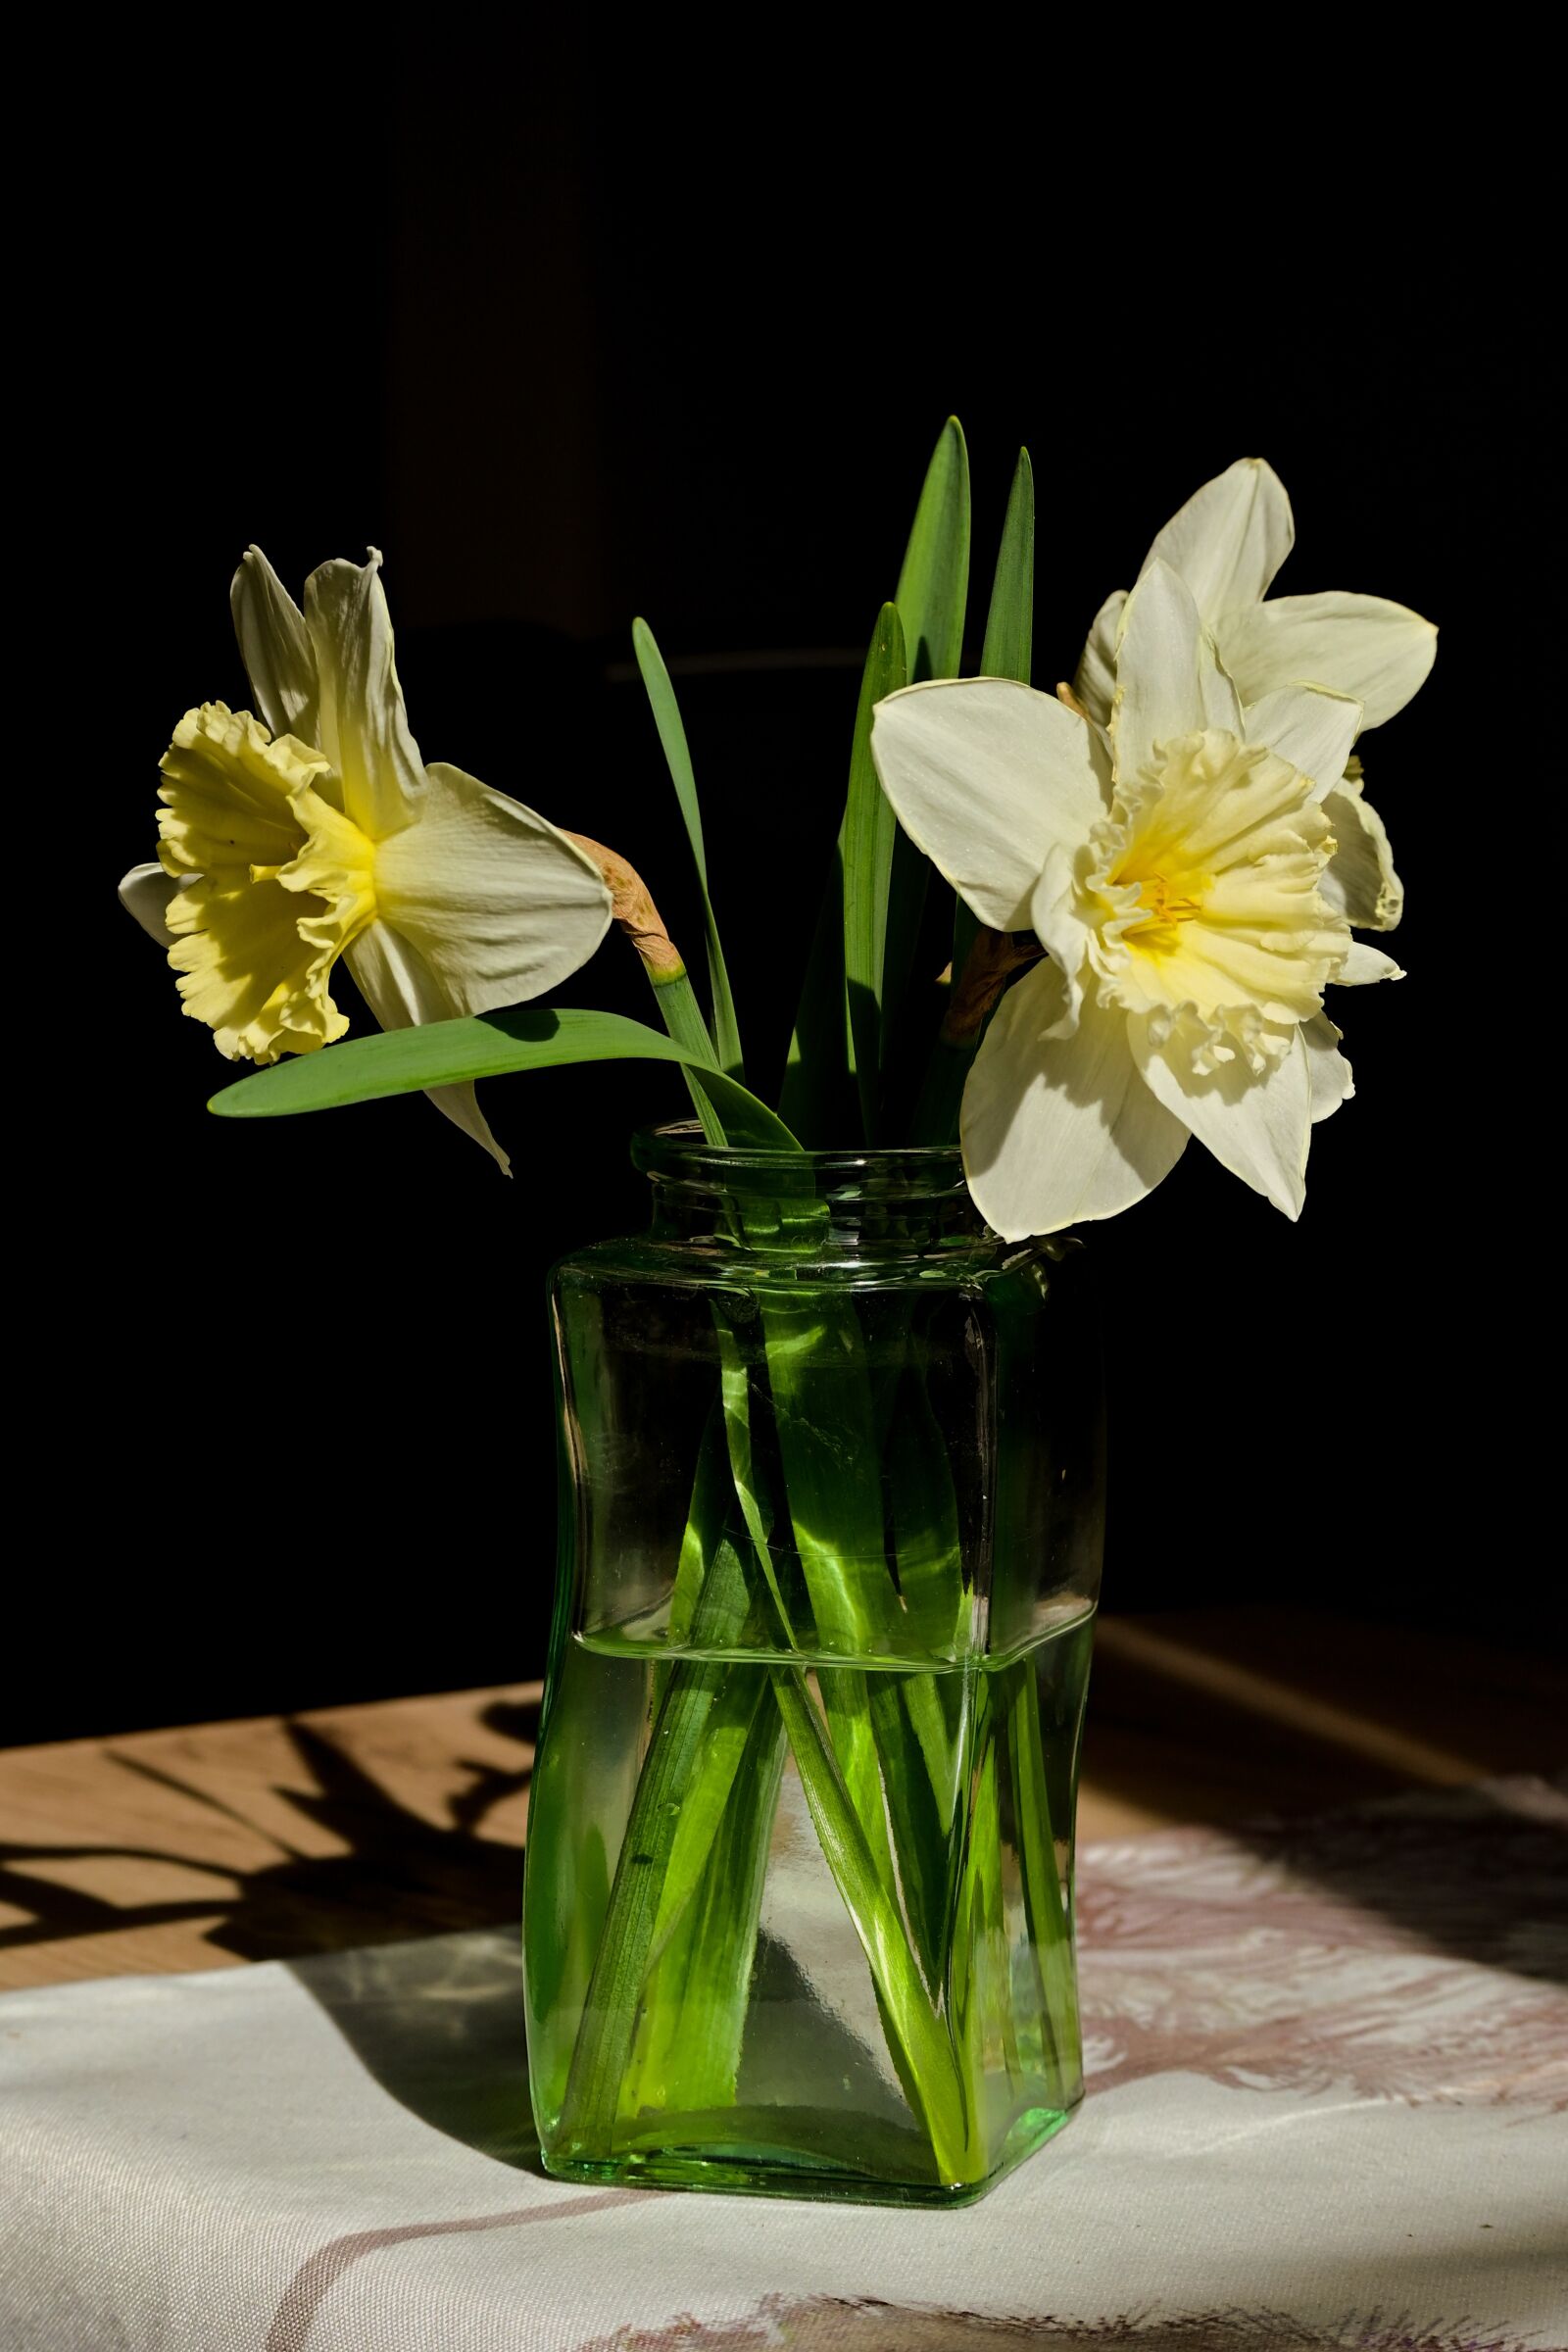 Nikon Z 50 sample photo. Daffodils, vase, spring photography